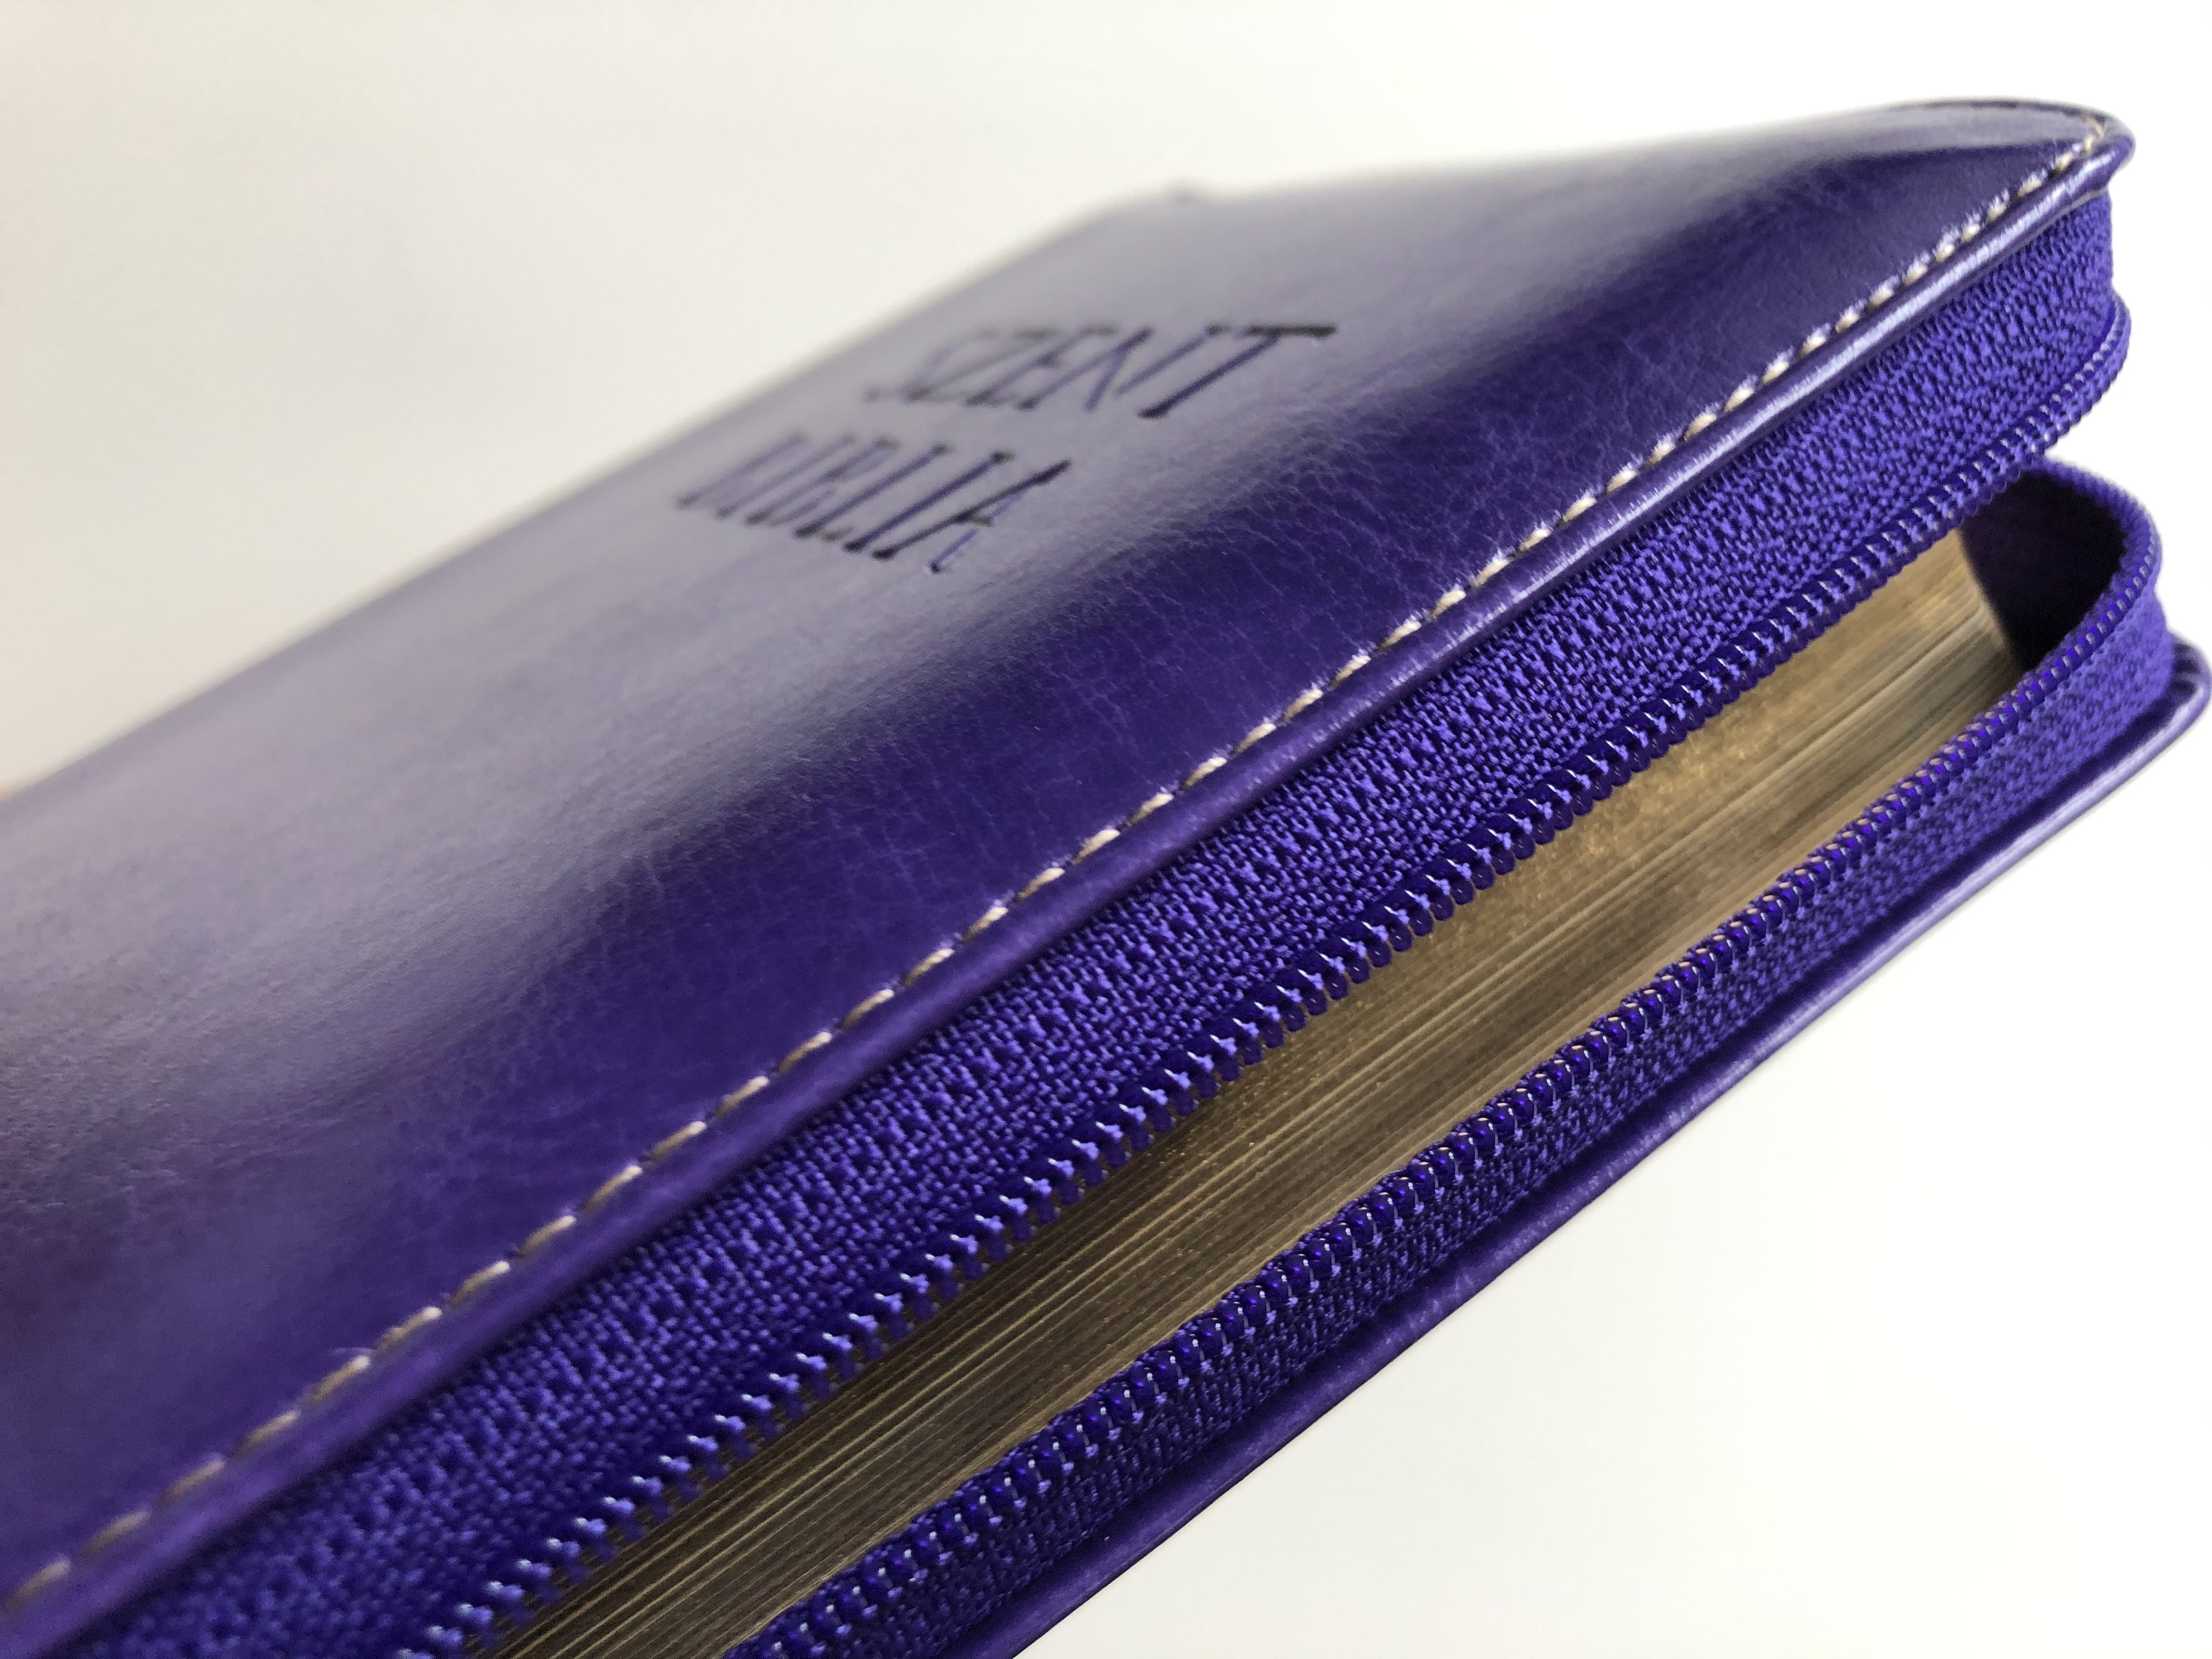 holy-bible-szent-biblia-lila-k-roli-g-sp-r-small-size-imitation-leather-with-zipper-16.jpg